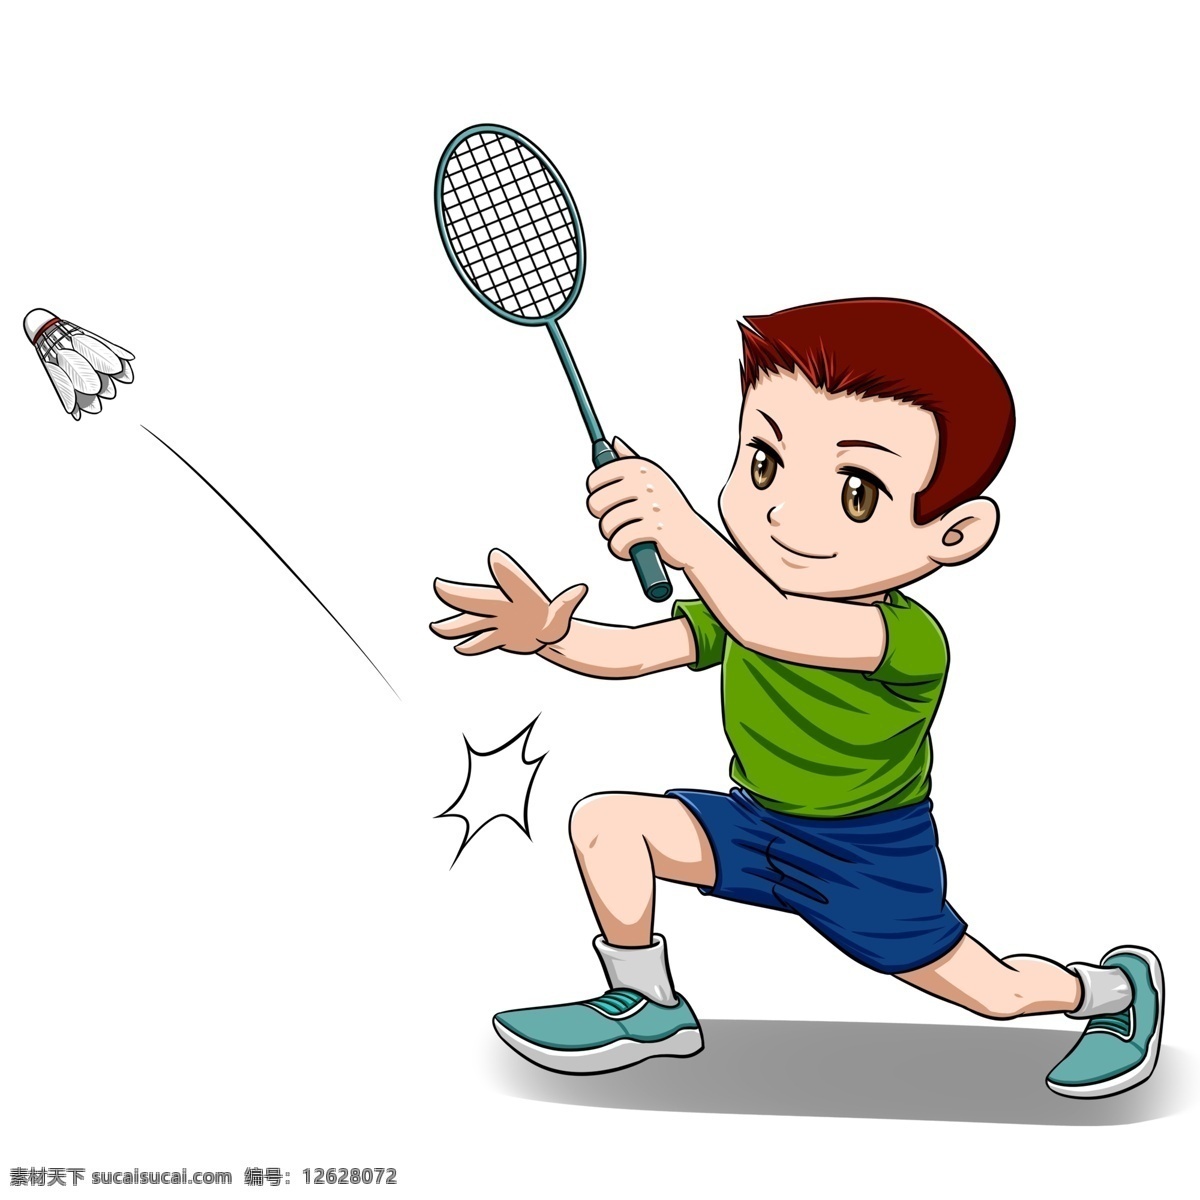 羽毛球 小学生 运动 小男孩 卡通 可爱 小孩 商用 平涂